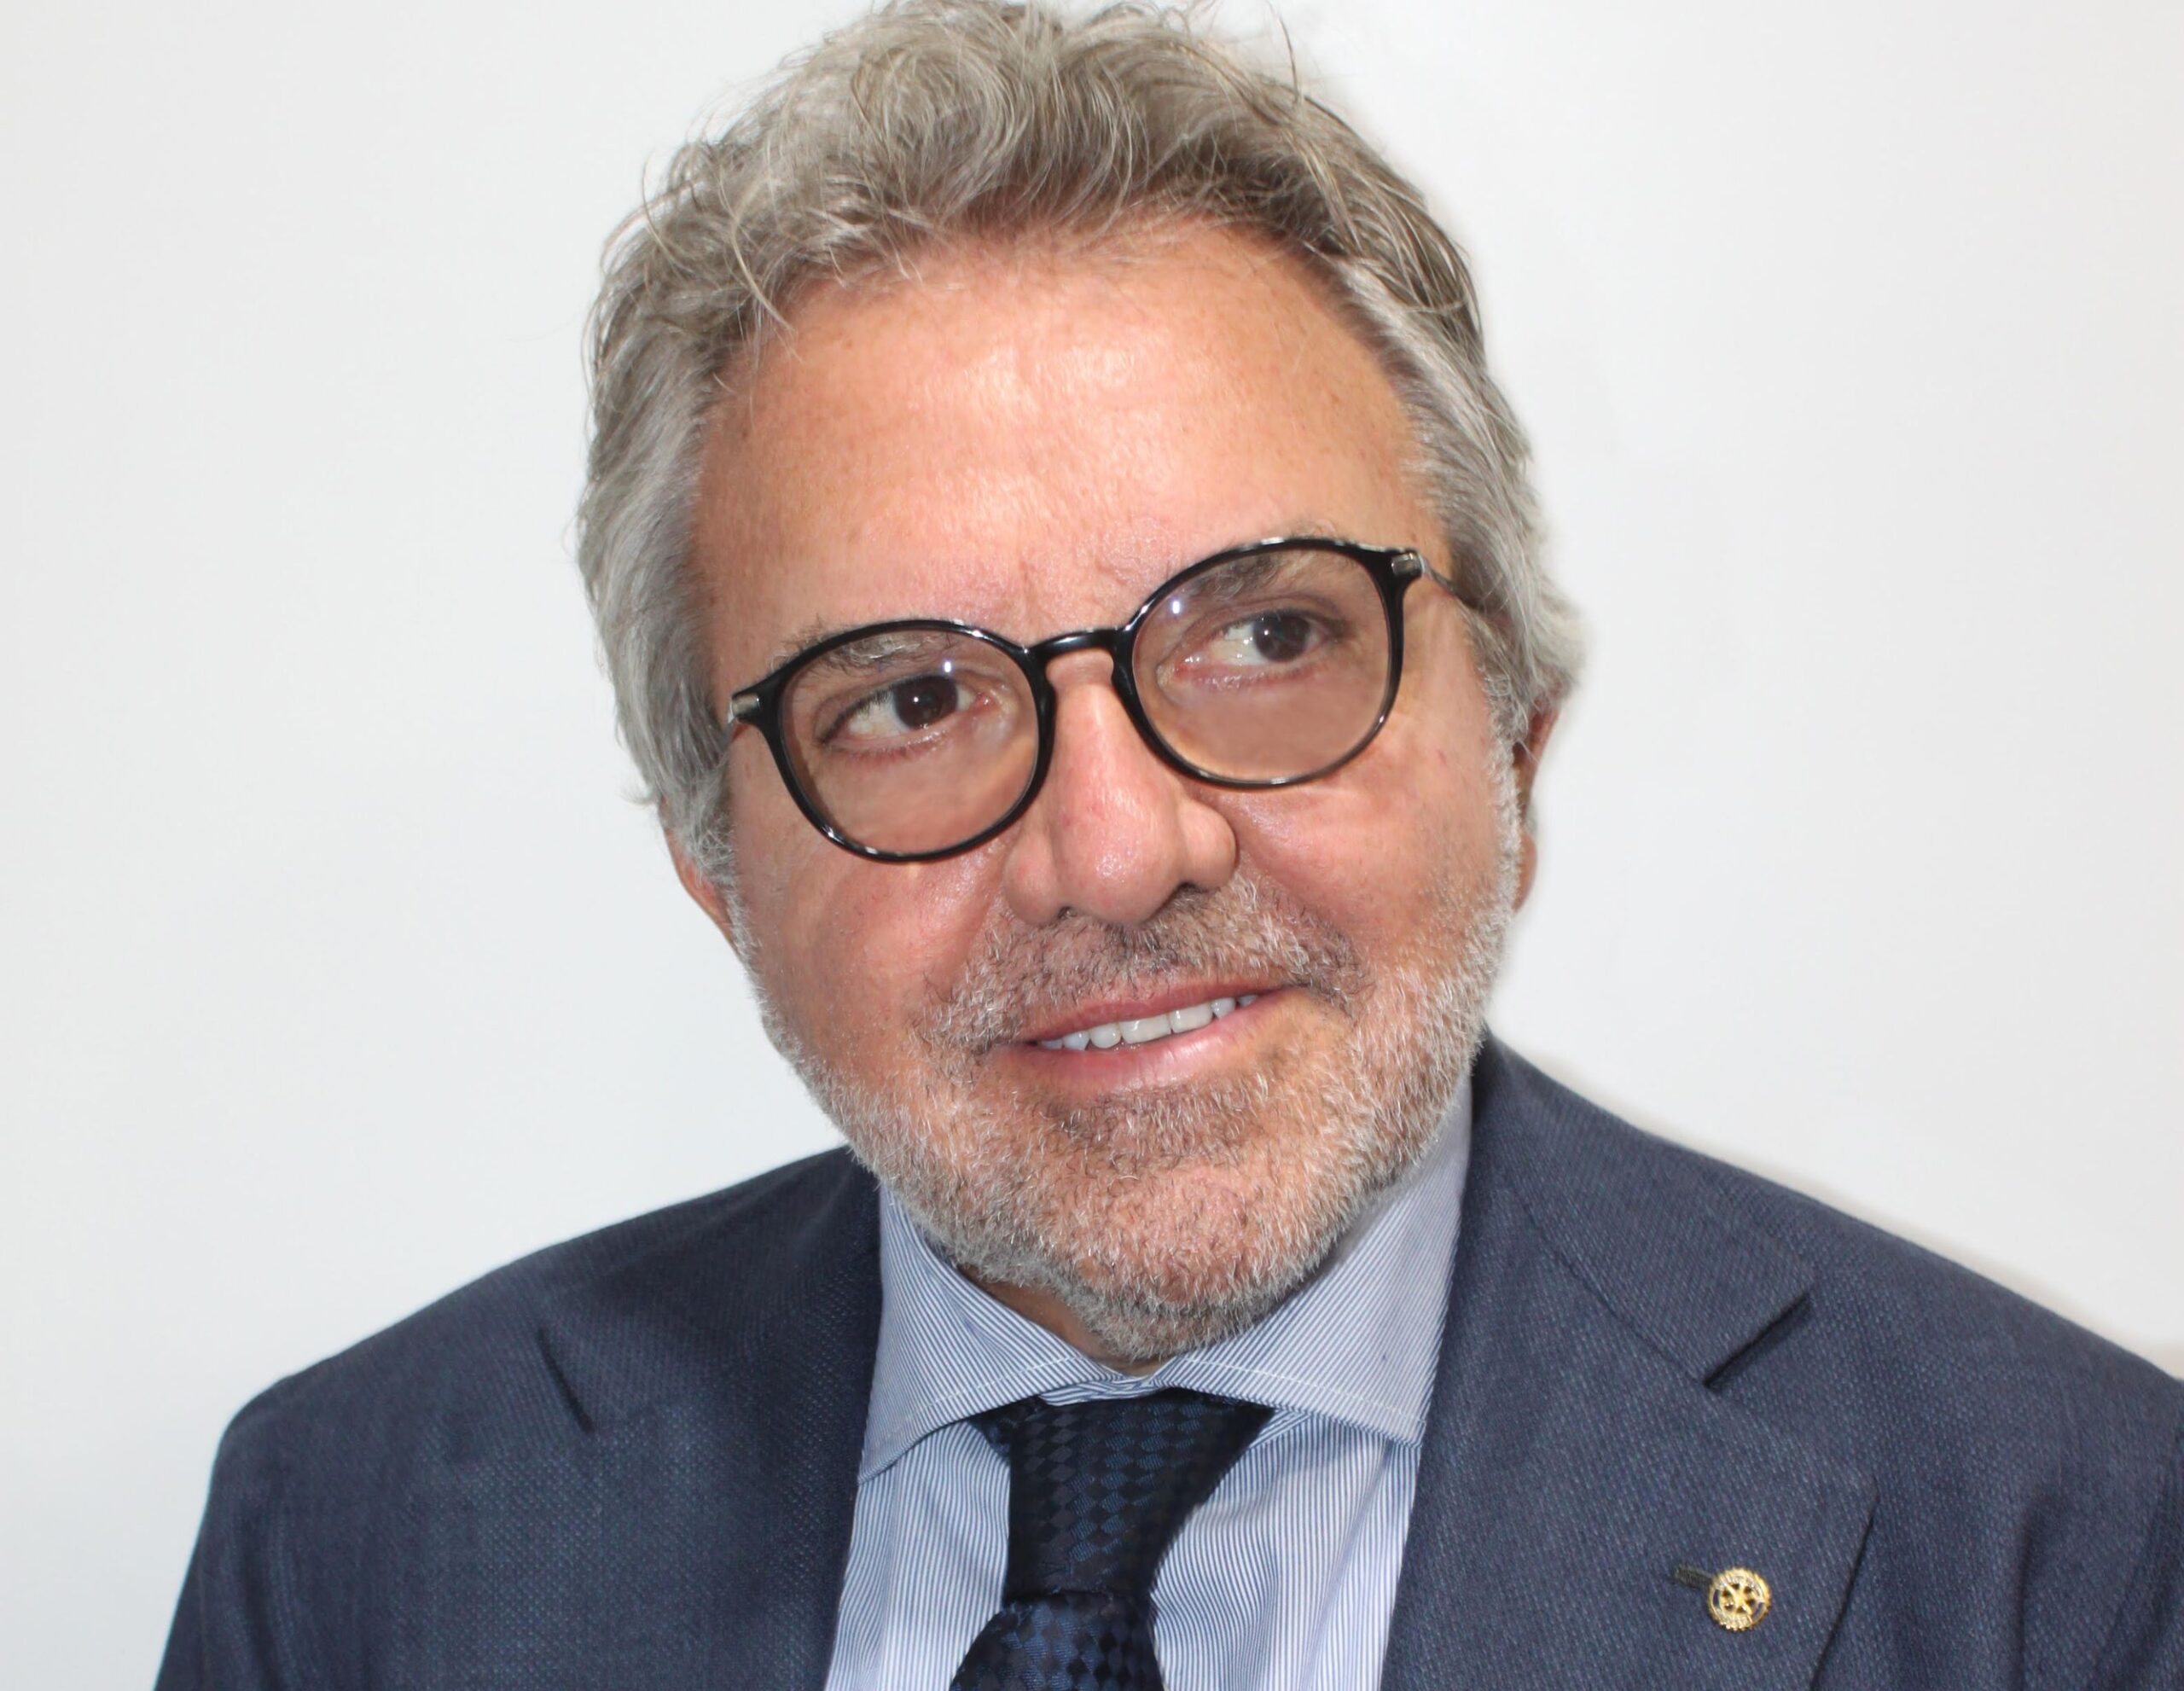 Sisma e patrimonio abitativo italiano, Angelo Coviello (IGB): "Ecco perché assicurati vincono tutti"